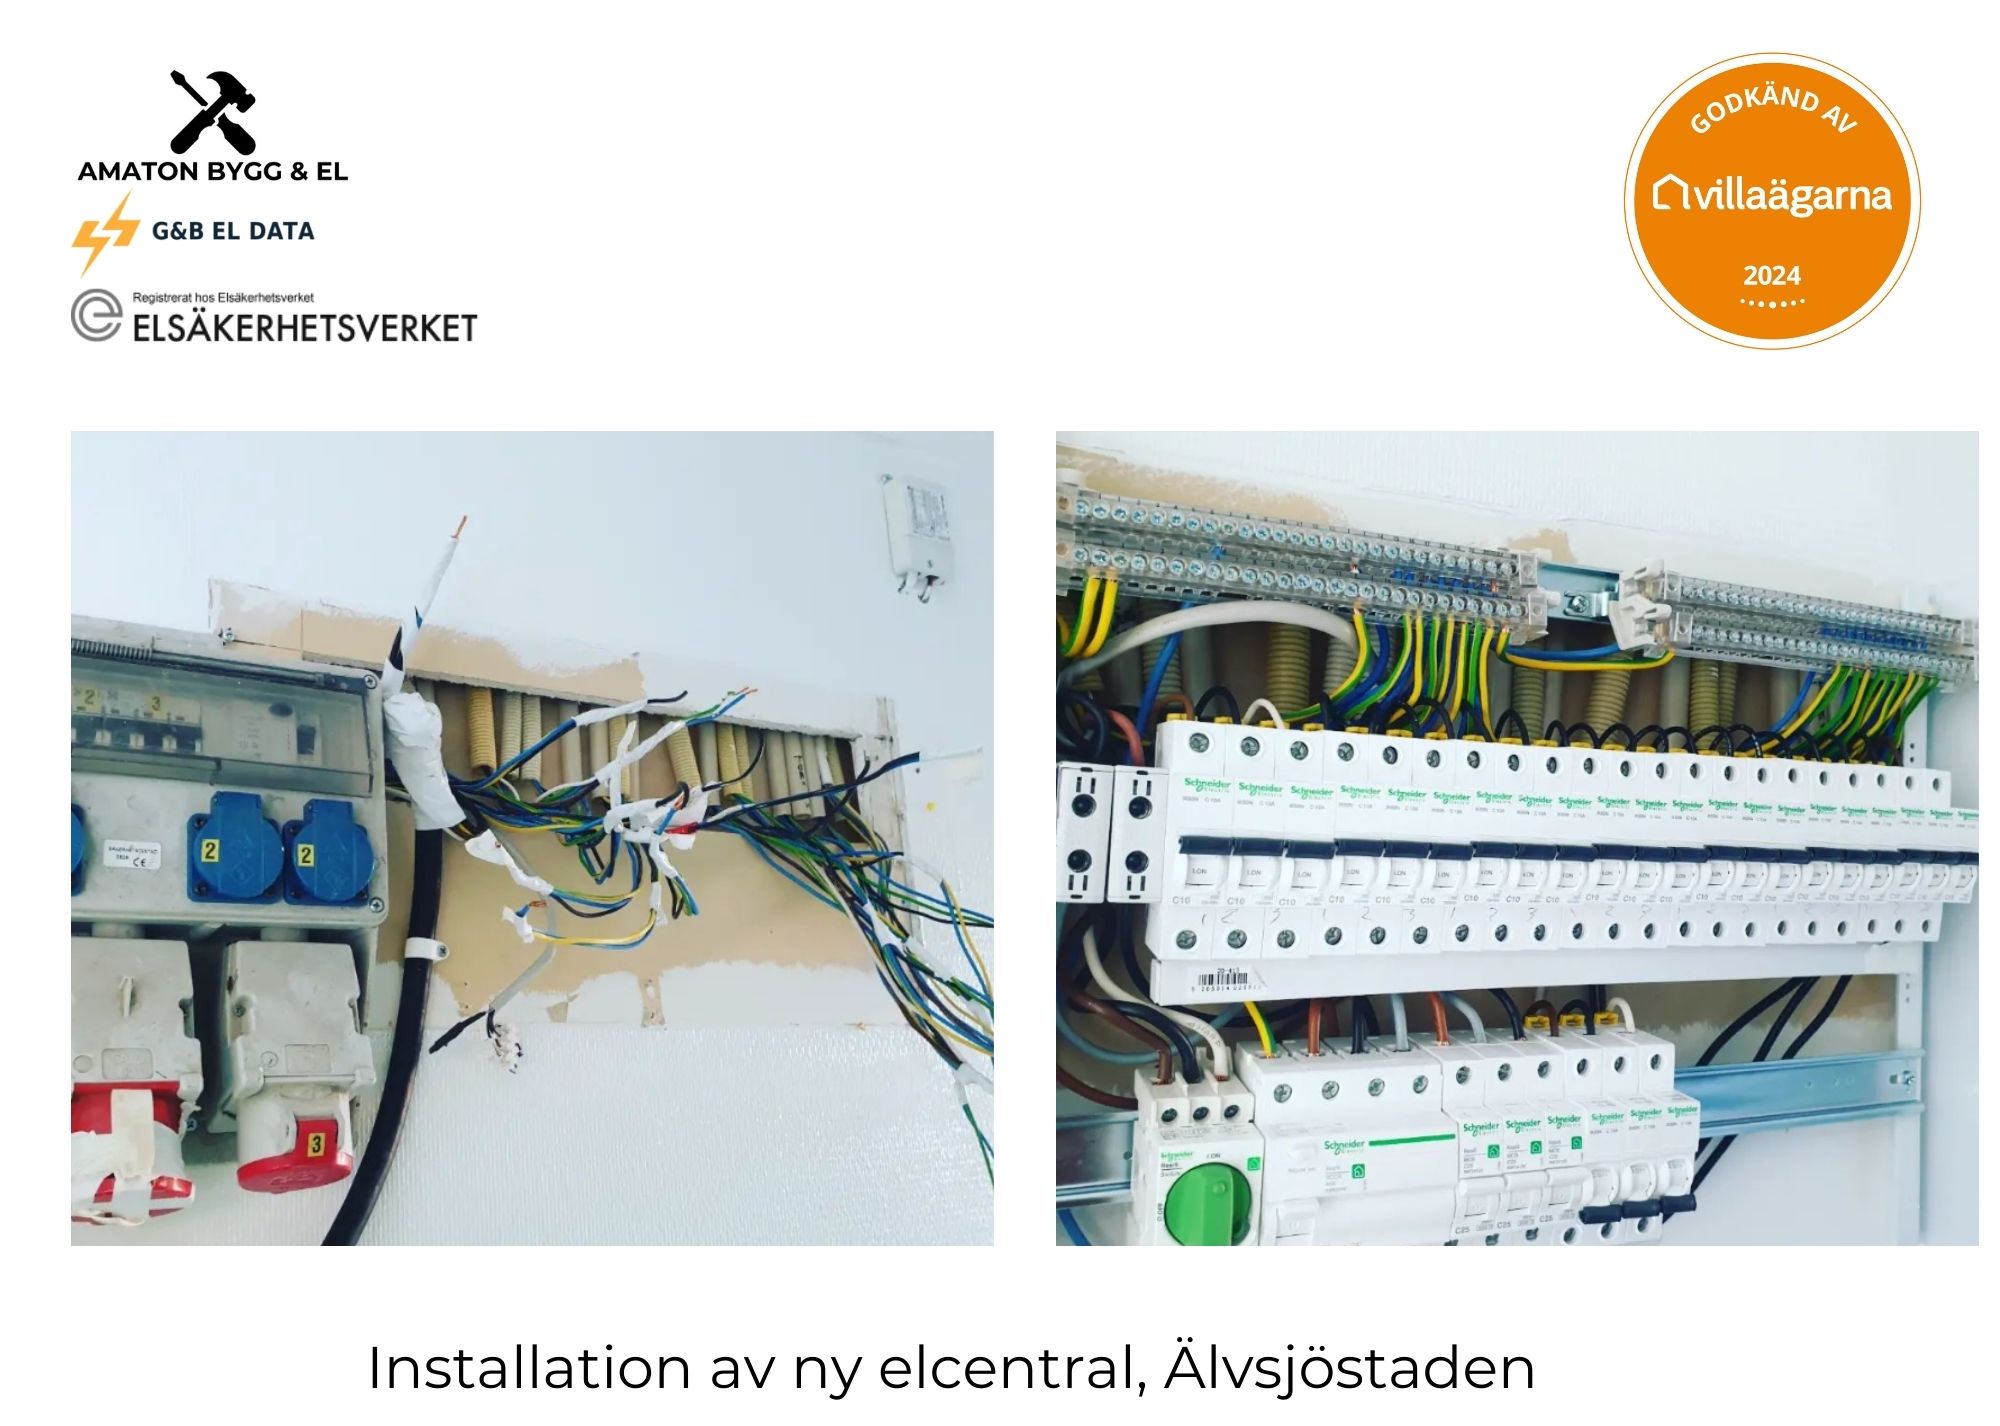 Referensjobb "Installation av elcentral" utfört av Amaton Bygg & El / Amaton Group AB